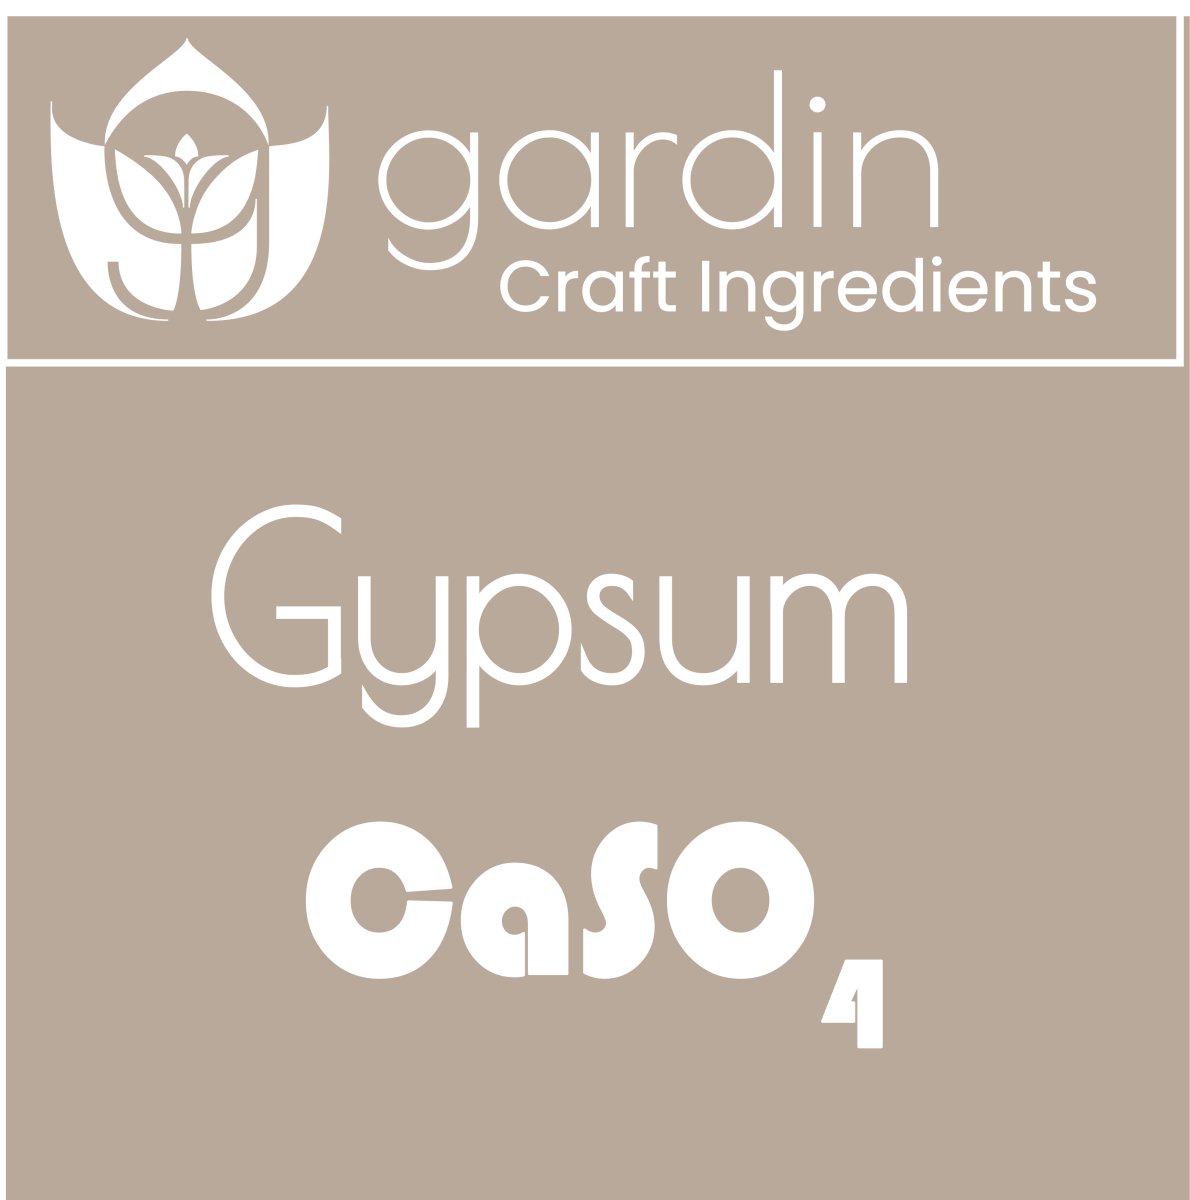 - Gypsum - Pulverized - Gardin Warehouse